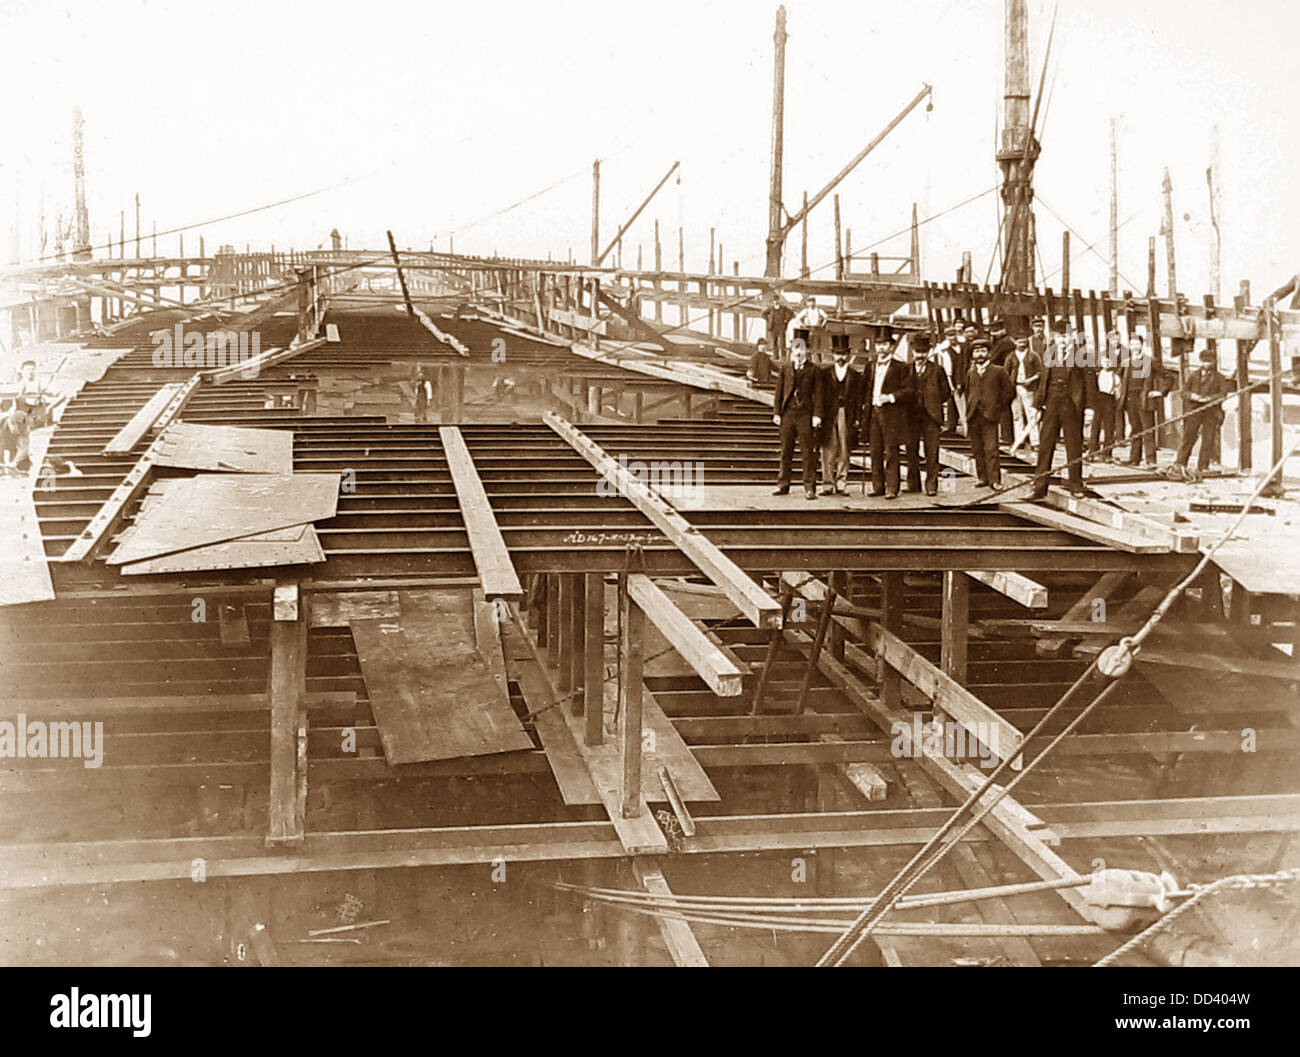 Thames Ironworks et Shipbuilding Company - construire un navire de l'époque Victorienne - construire le pont Banque D'Images